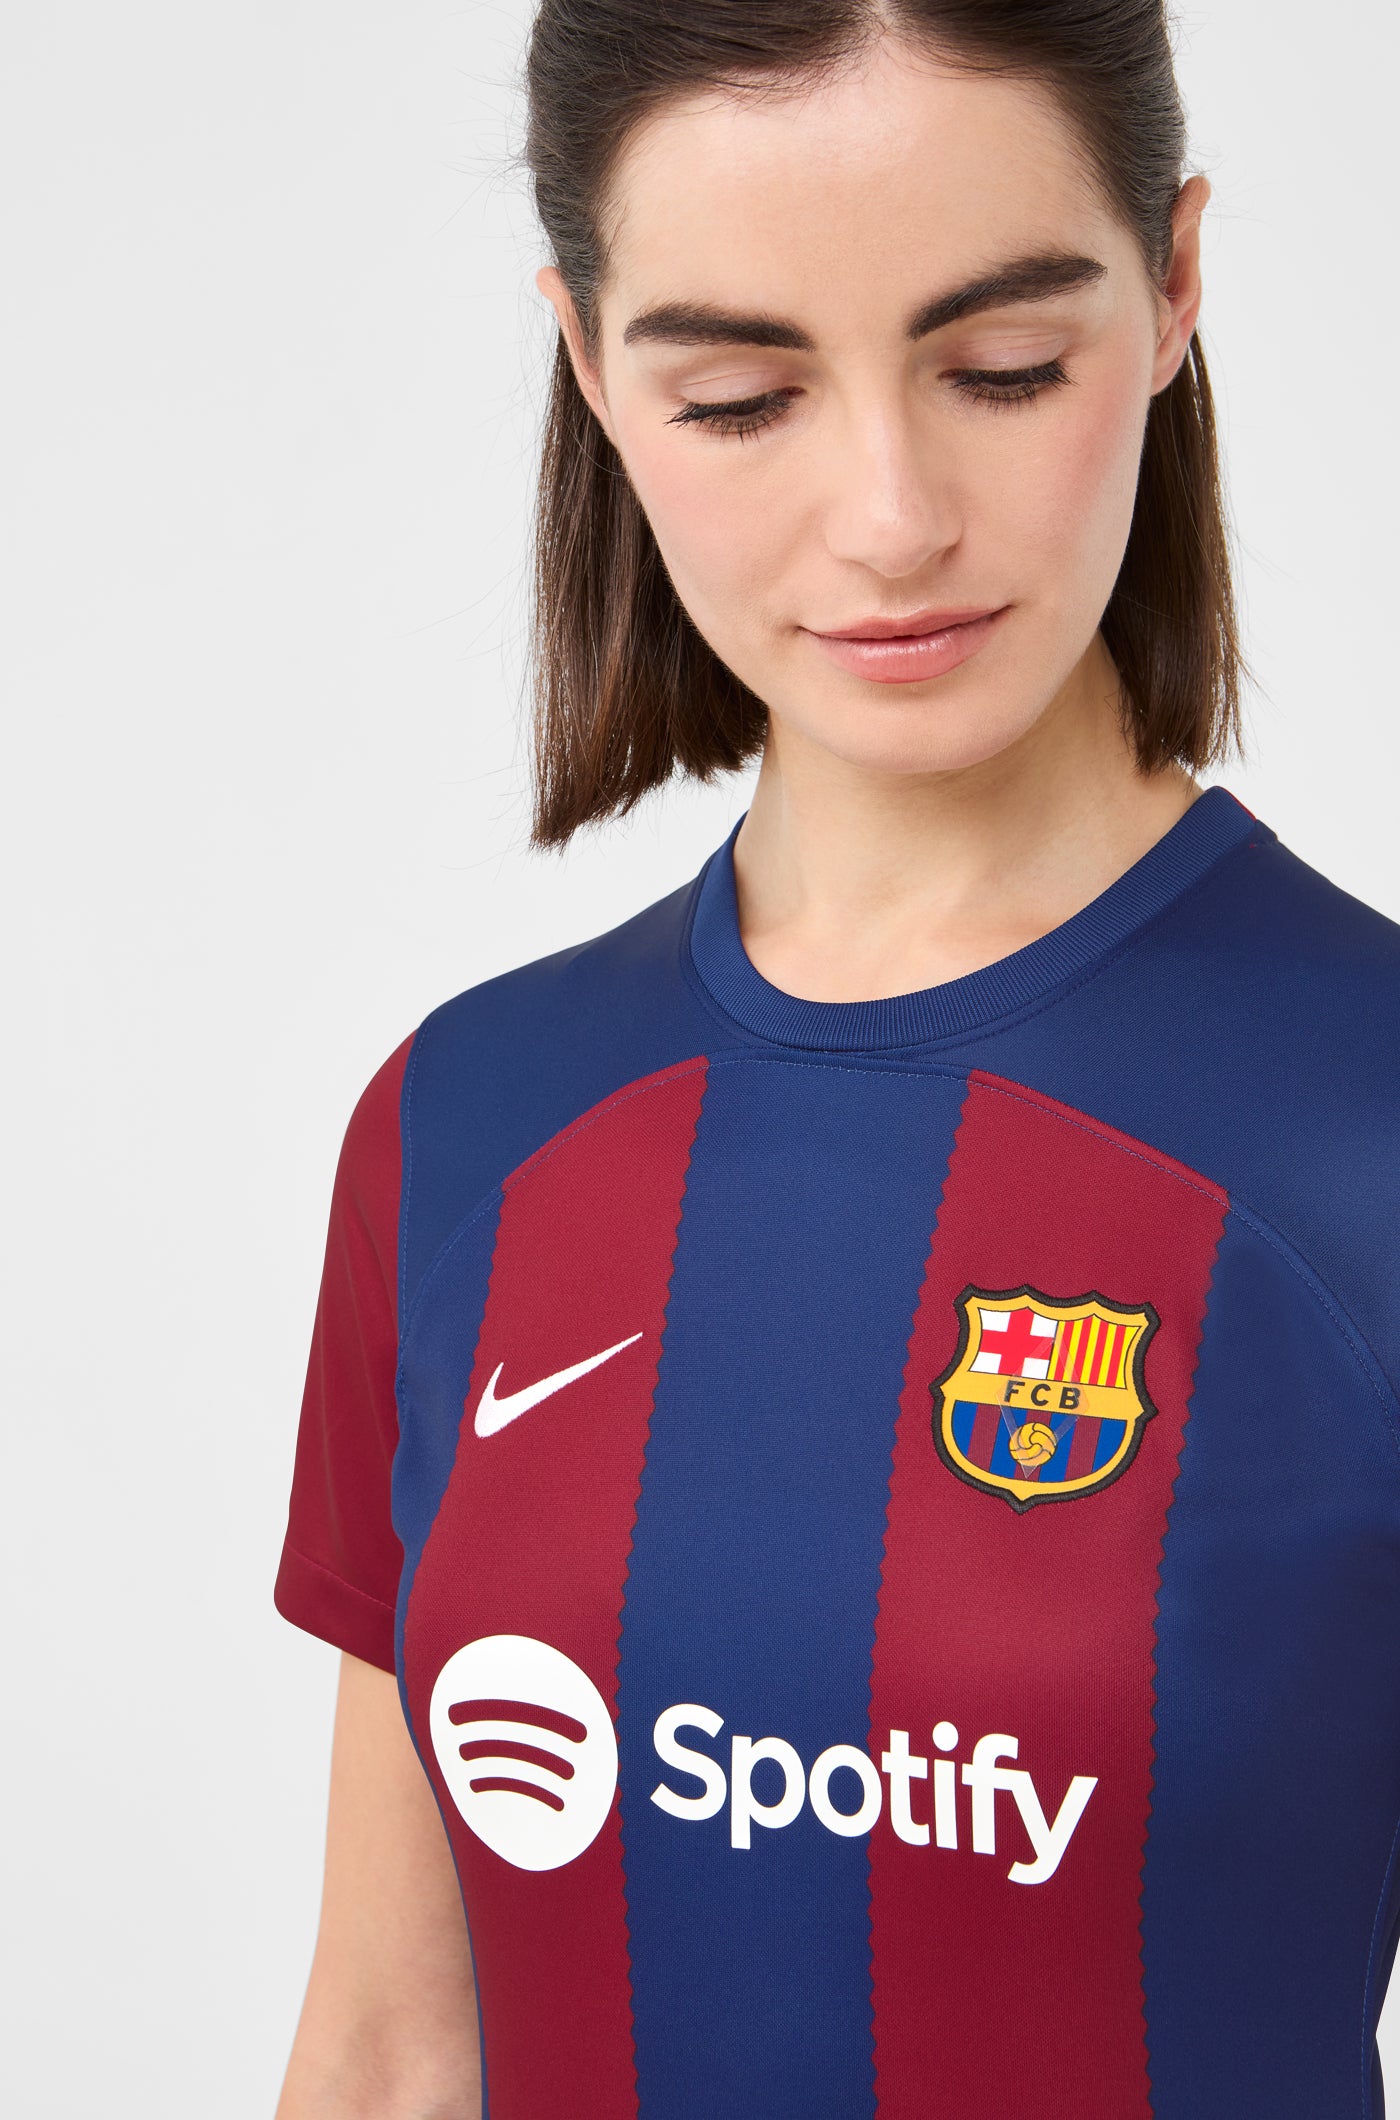 Camiseta Pedri Fc Barcelona Producto Licenciado Primera Equipación 23-24  con Ofertas en Carrefour